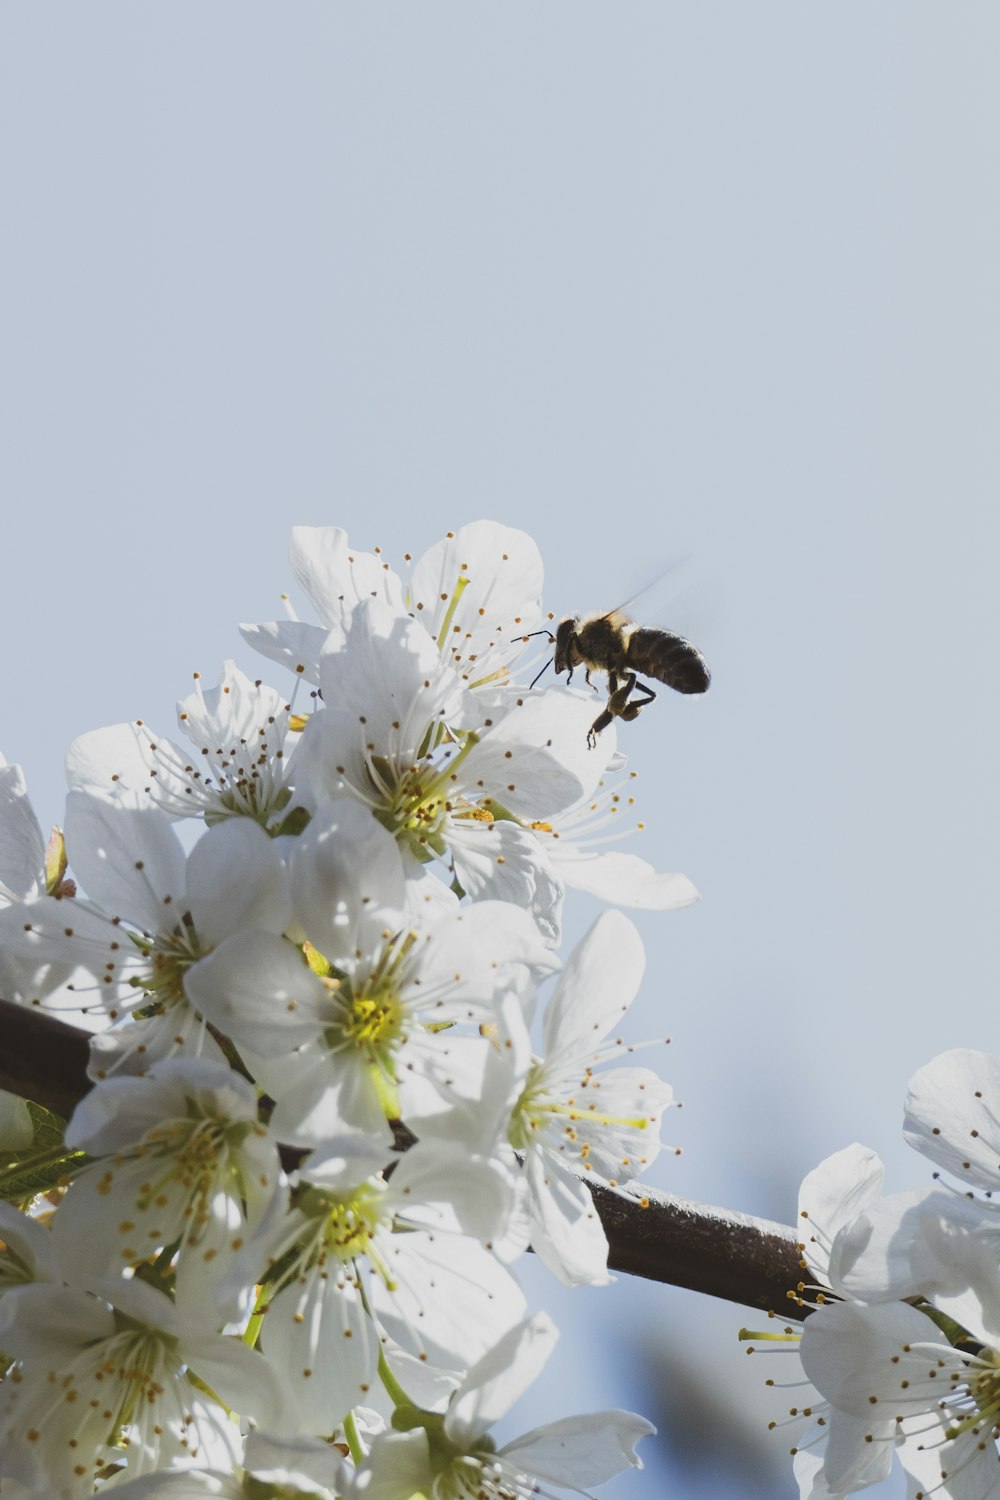 uma abelha voando sobre uma árvore florida branca